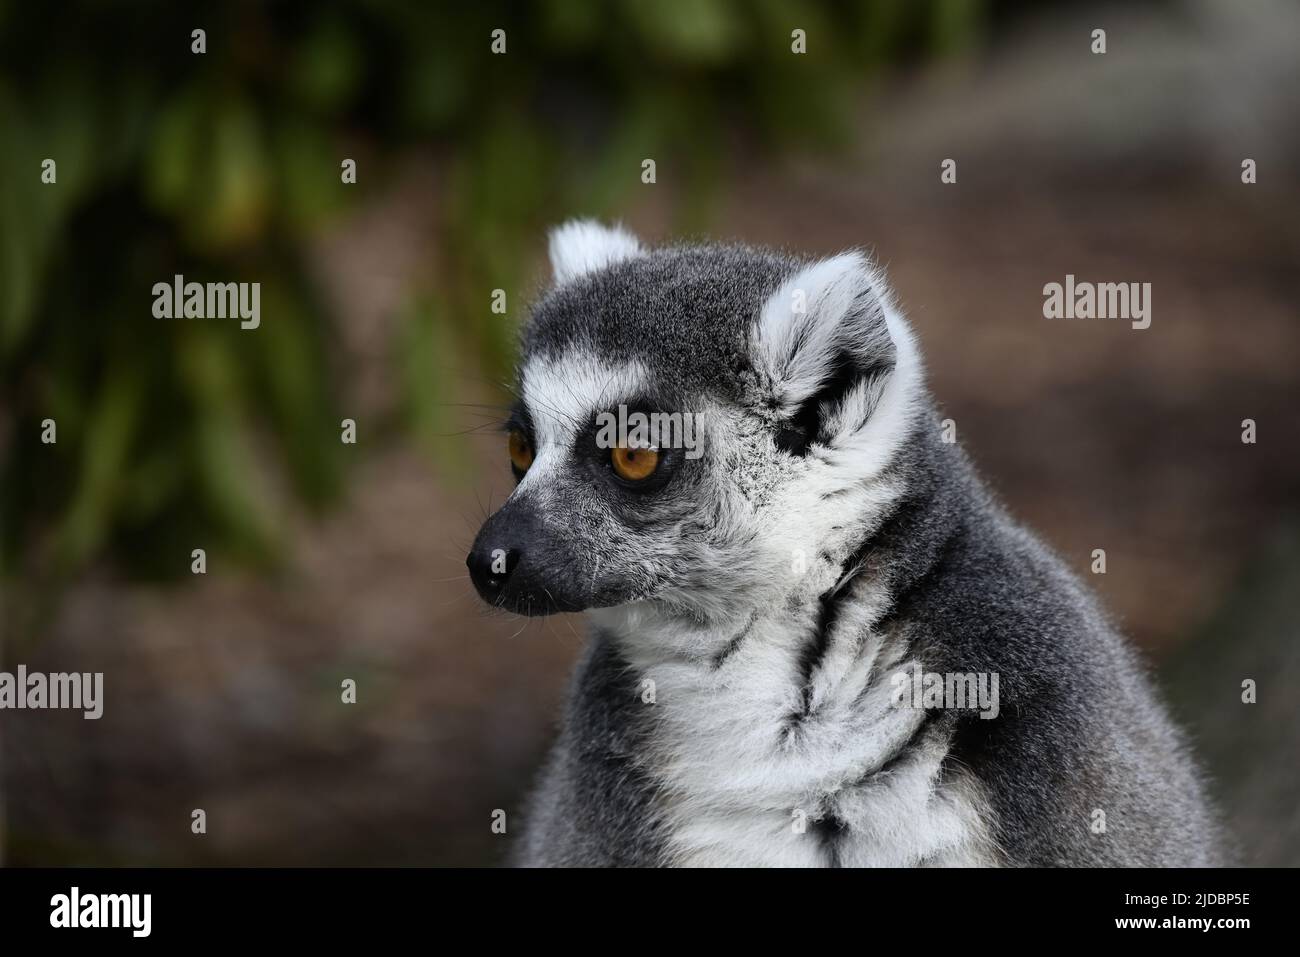 Links vom Kopf eines entspannten, ringschwanzigen Lemurenkopfes, während der Lemur mit weit geöffneten Augen nach rechts schaut, mit verschwommener Vegetation im Hintergrund Stockfoto